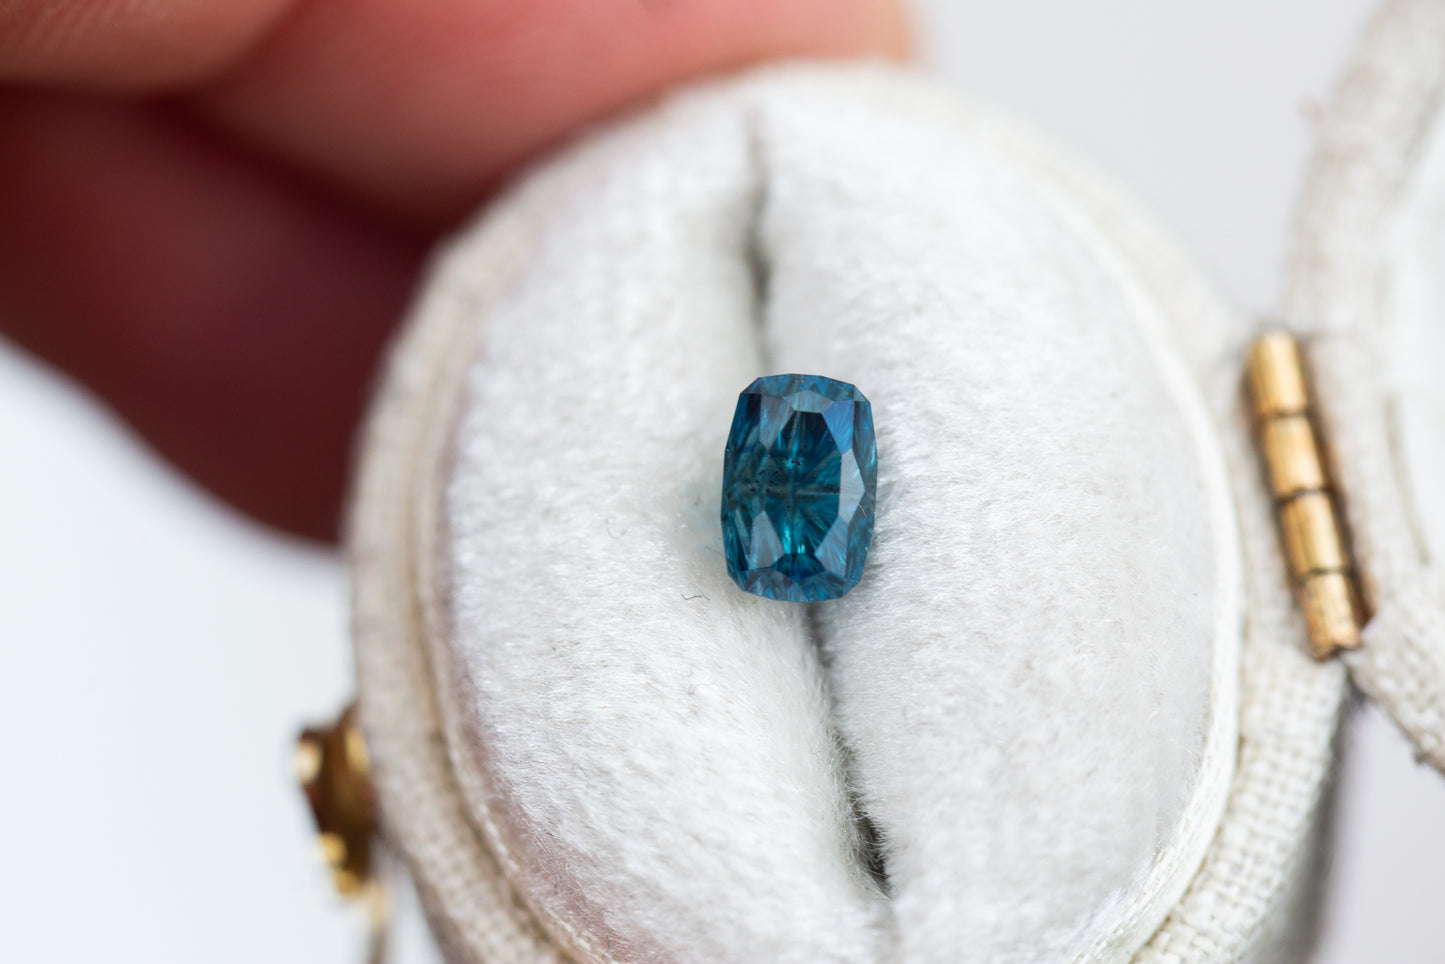 1.2ct teal blue cushion cut sapphire- Starbrite cut by John Dyer